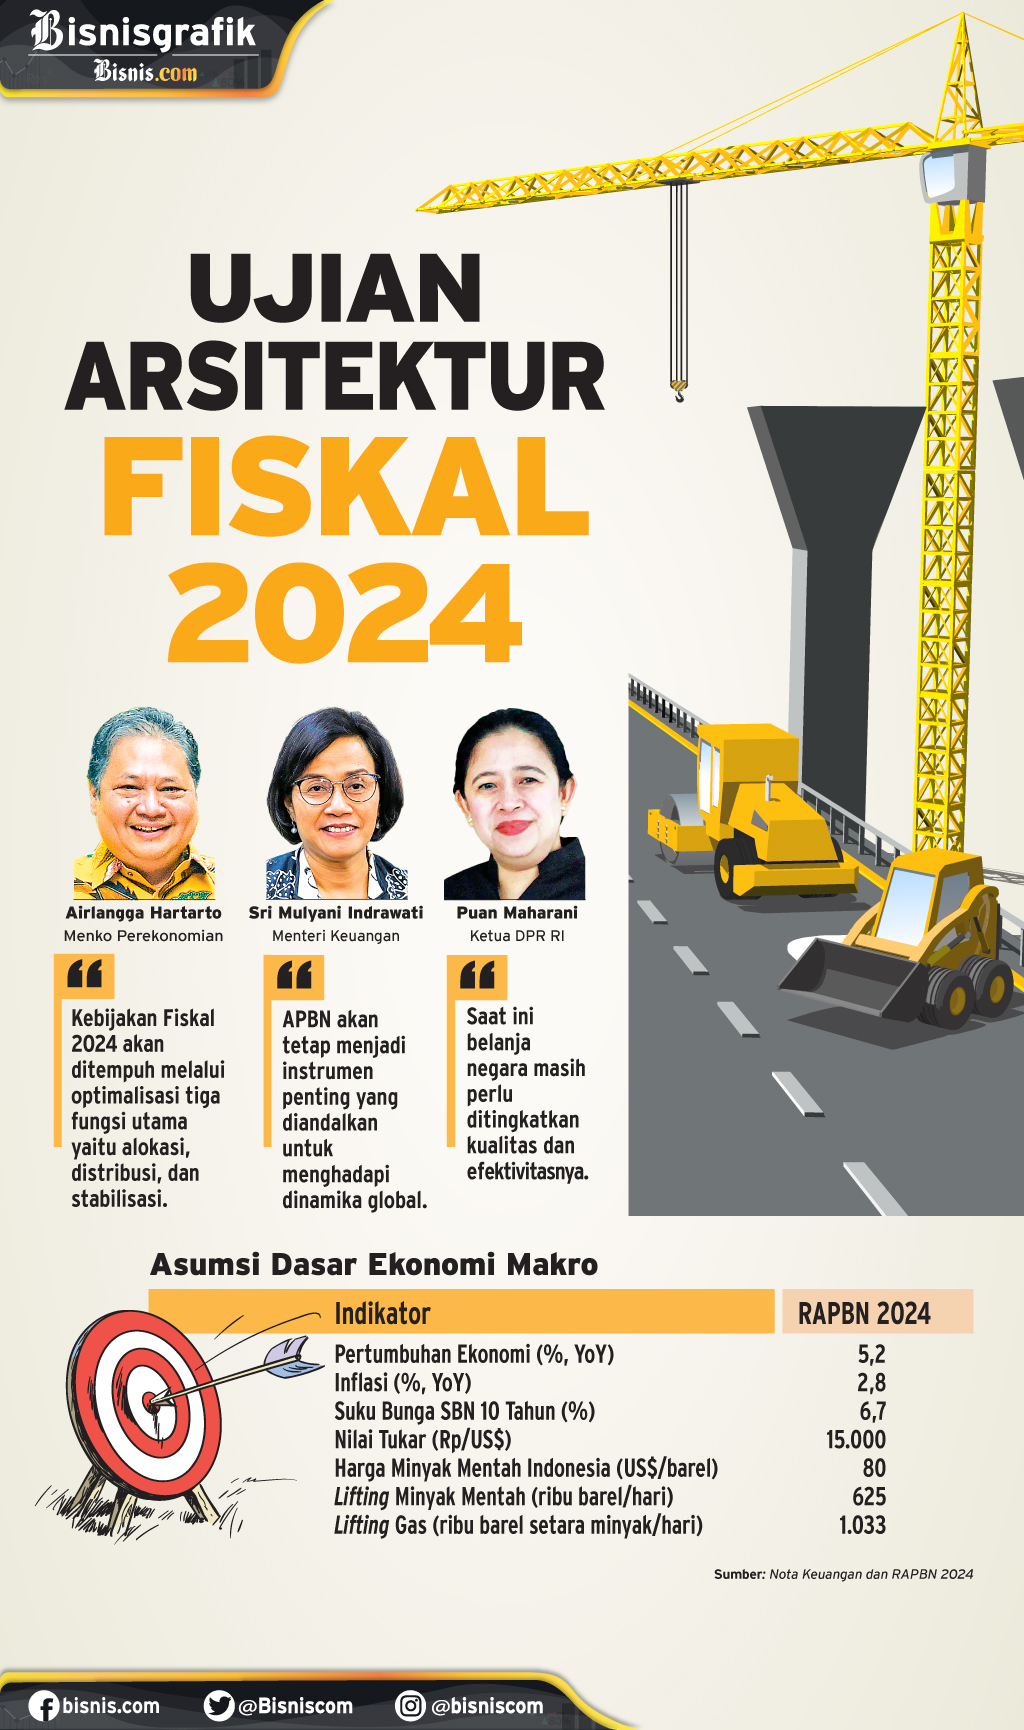  NOTA KEUANGAN & RAPBN 2024 : Ujian Arsitektur Fiskal 2024